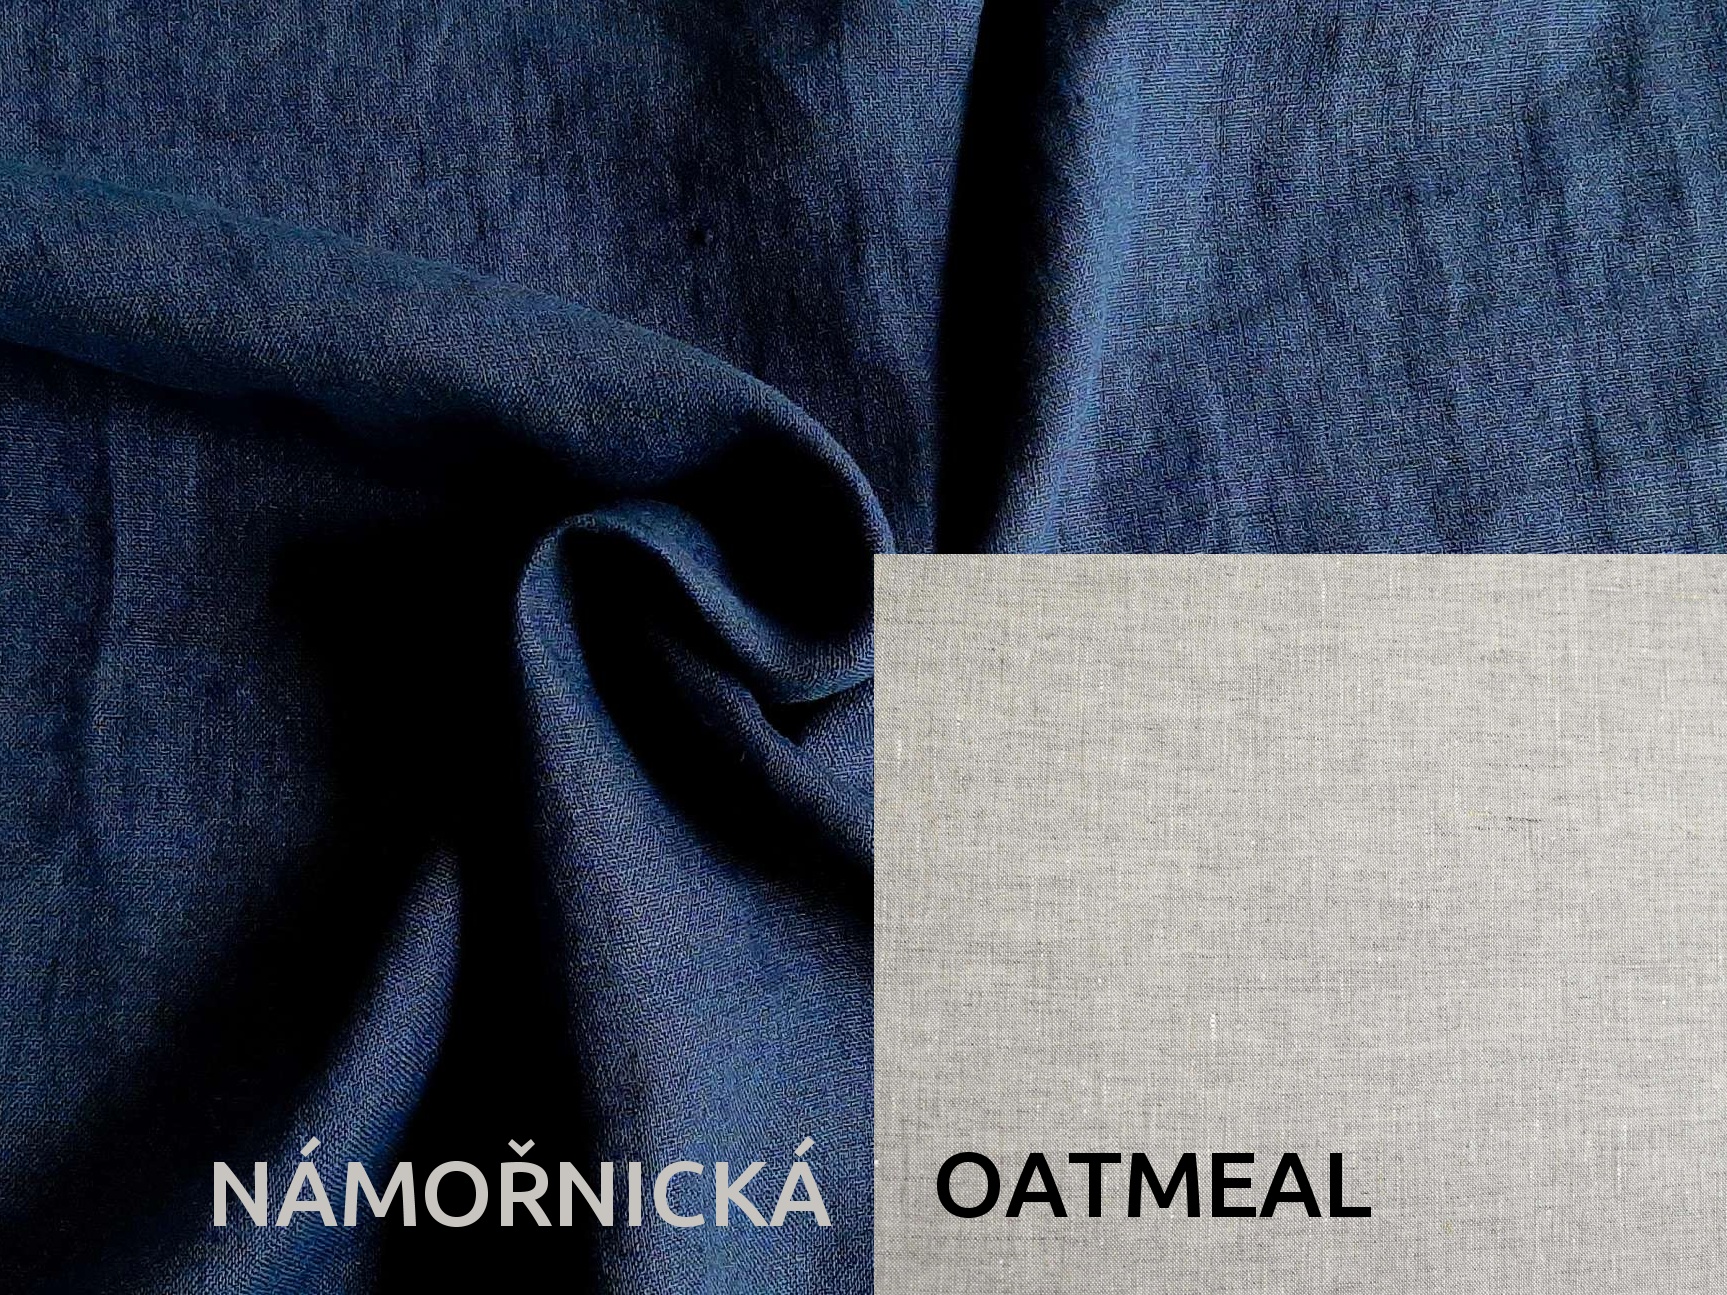 Lněná deka s prošitím námořnická modrá, oatmeal